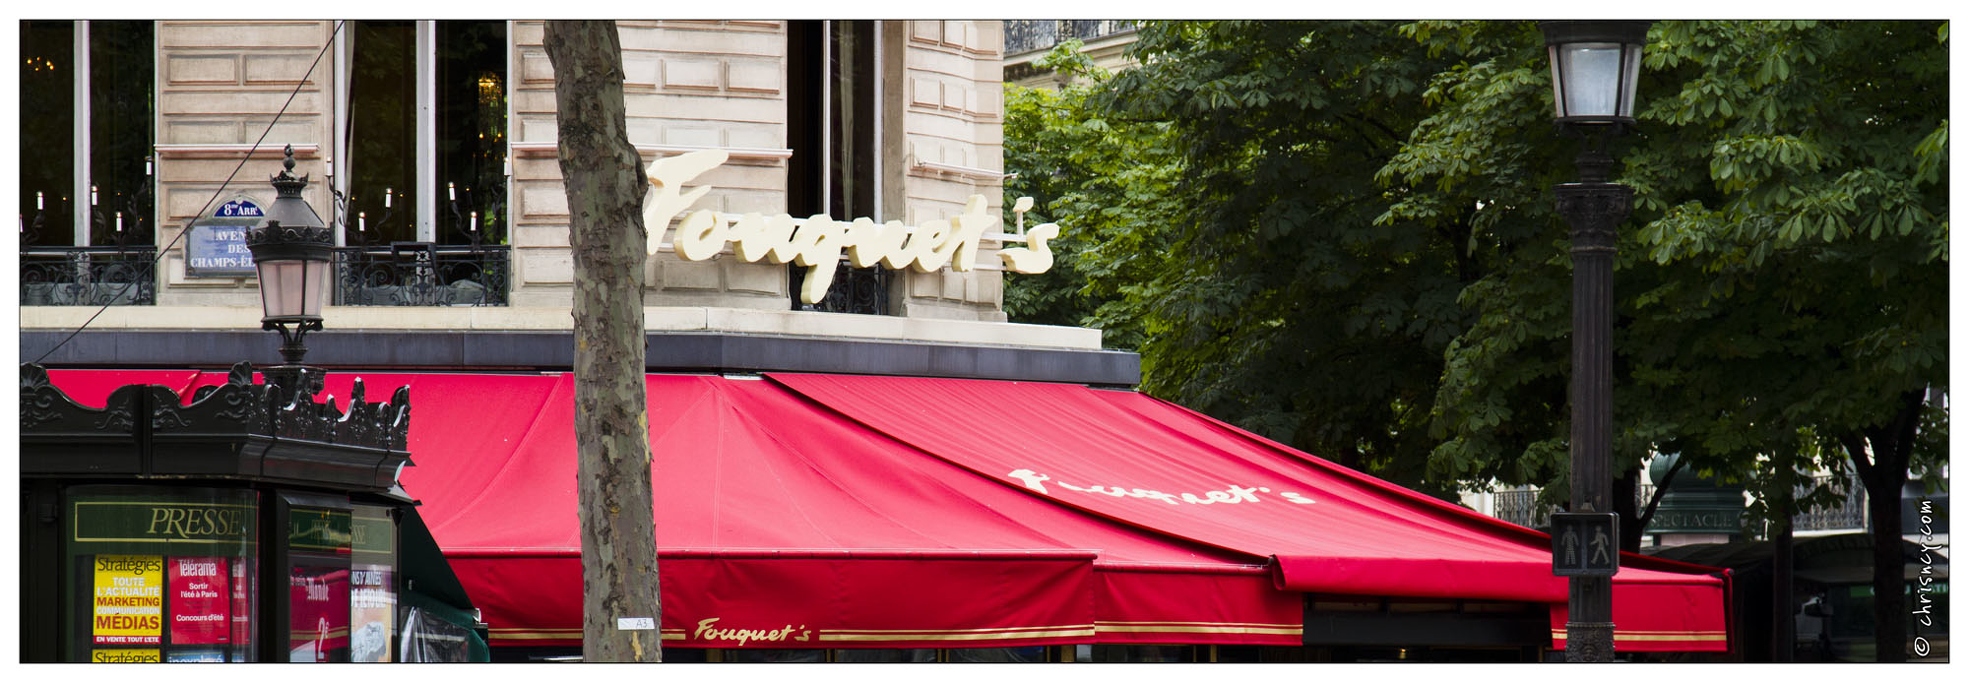 20120714-166_4912-Paris_Fouquets_Champs_Elysees.jpg